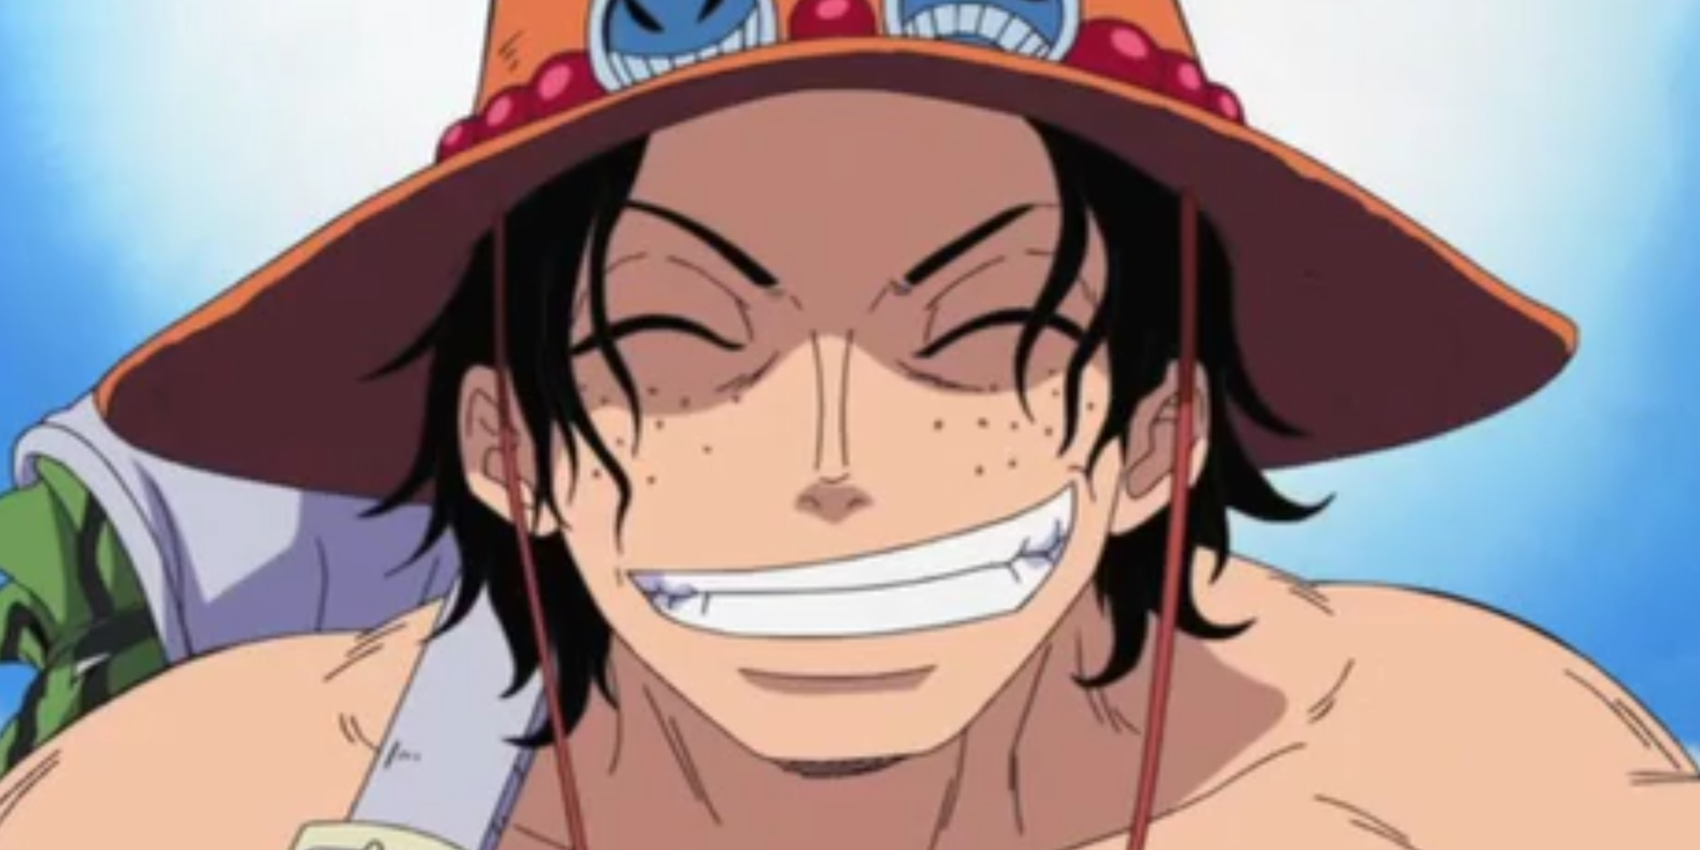 Официальный актер озвучки One Piece отмечает день рождения Луффи оригинальной иллюстрацией